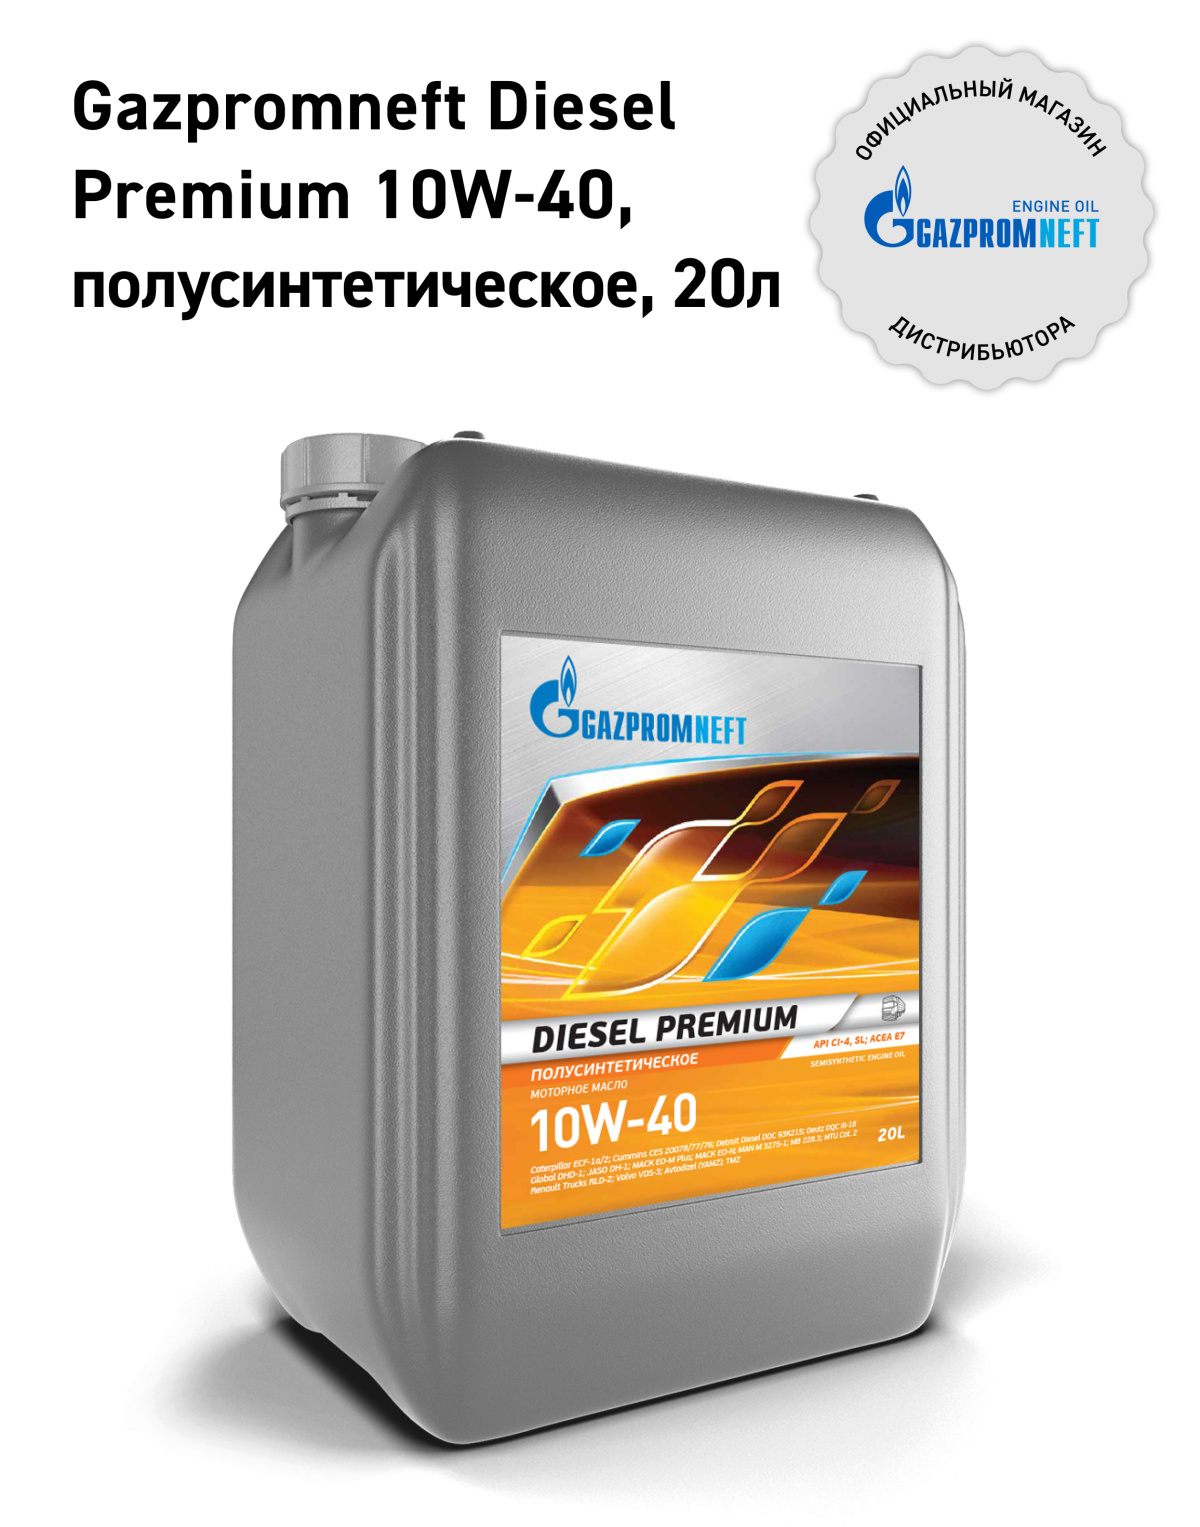 Gazpromneft Diesel Premium 10W-40 кан.20Л (17,80 кг) \